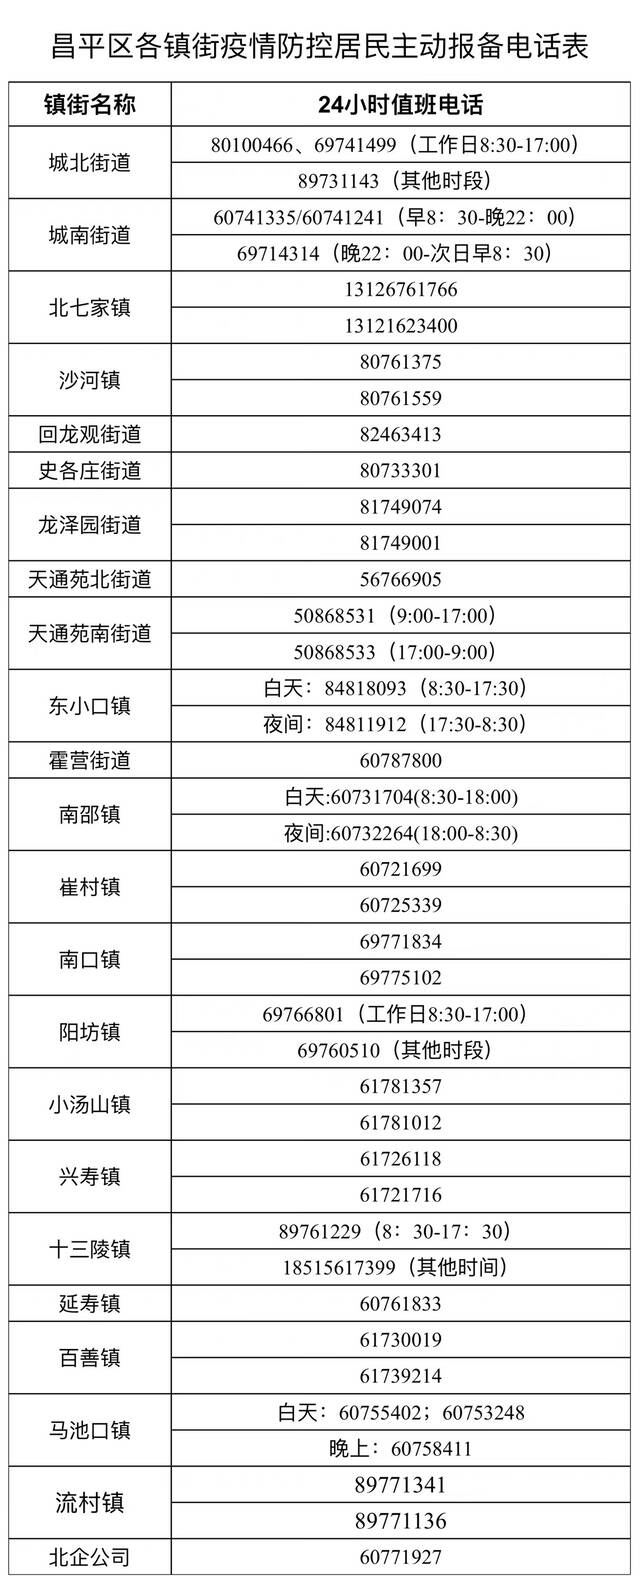 10月10日0-8时北京昌平区新增1名确诊病例 相关情况通报